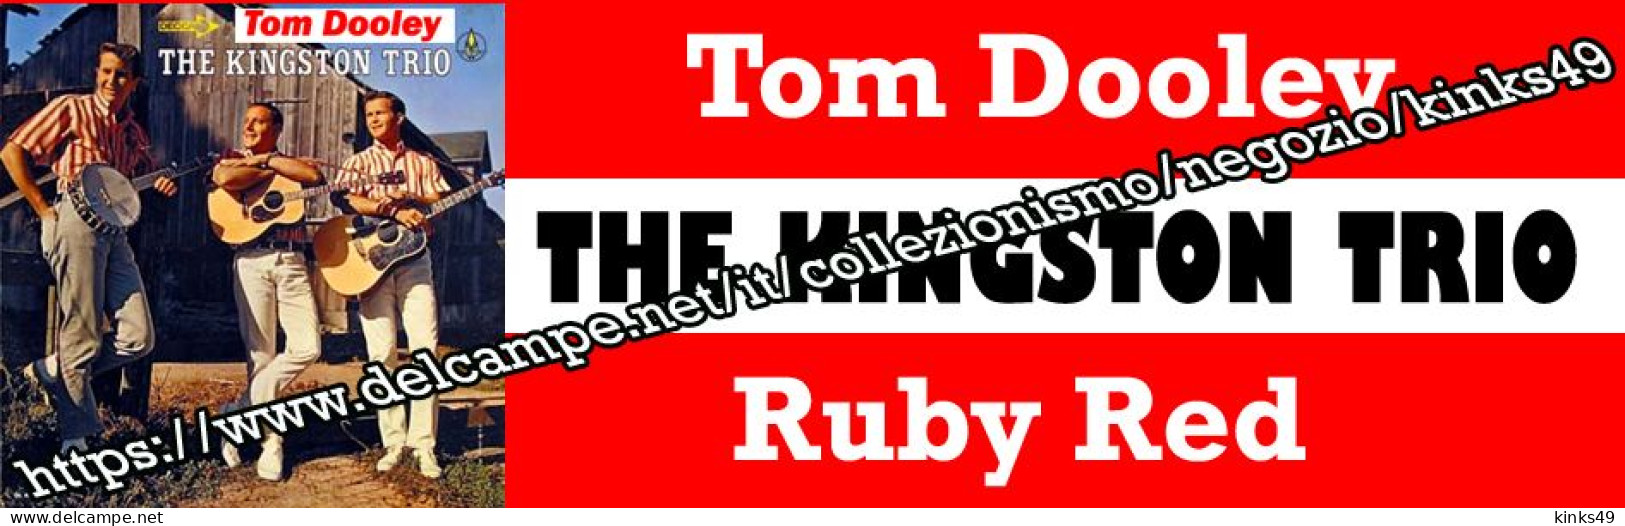 686> < THE KINGSTON TRIO : "Tom Dooley" > Tagliando / Sticker Juke Box = LEGGERE DESCRIZIONE = - Country Y Folk